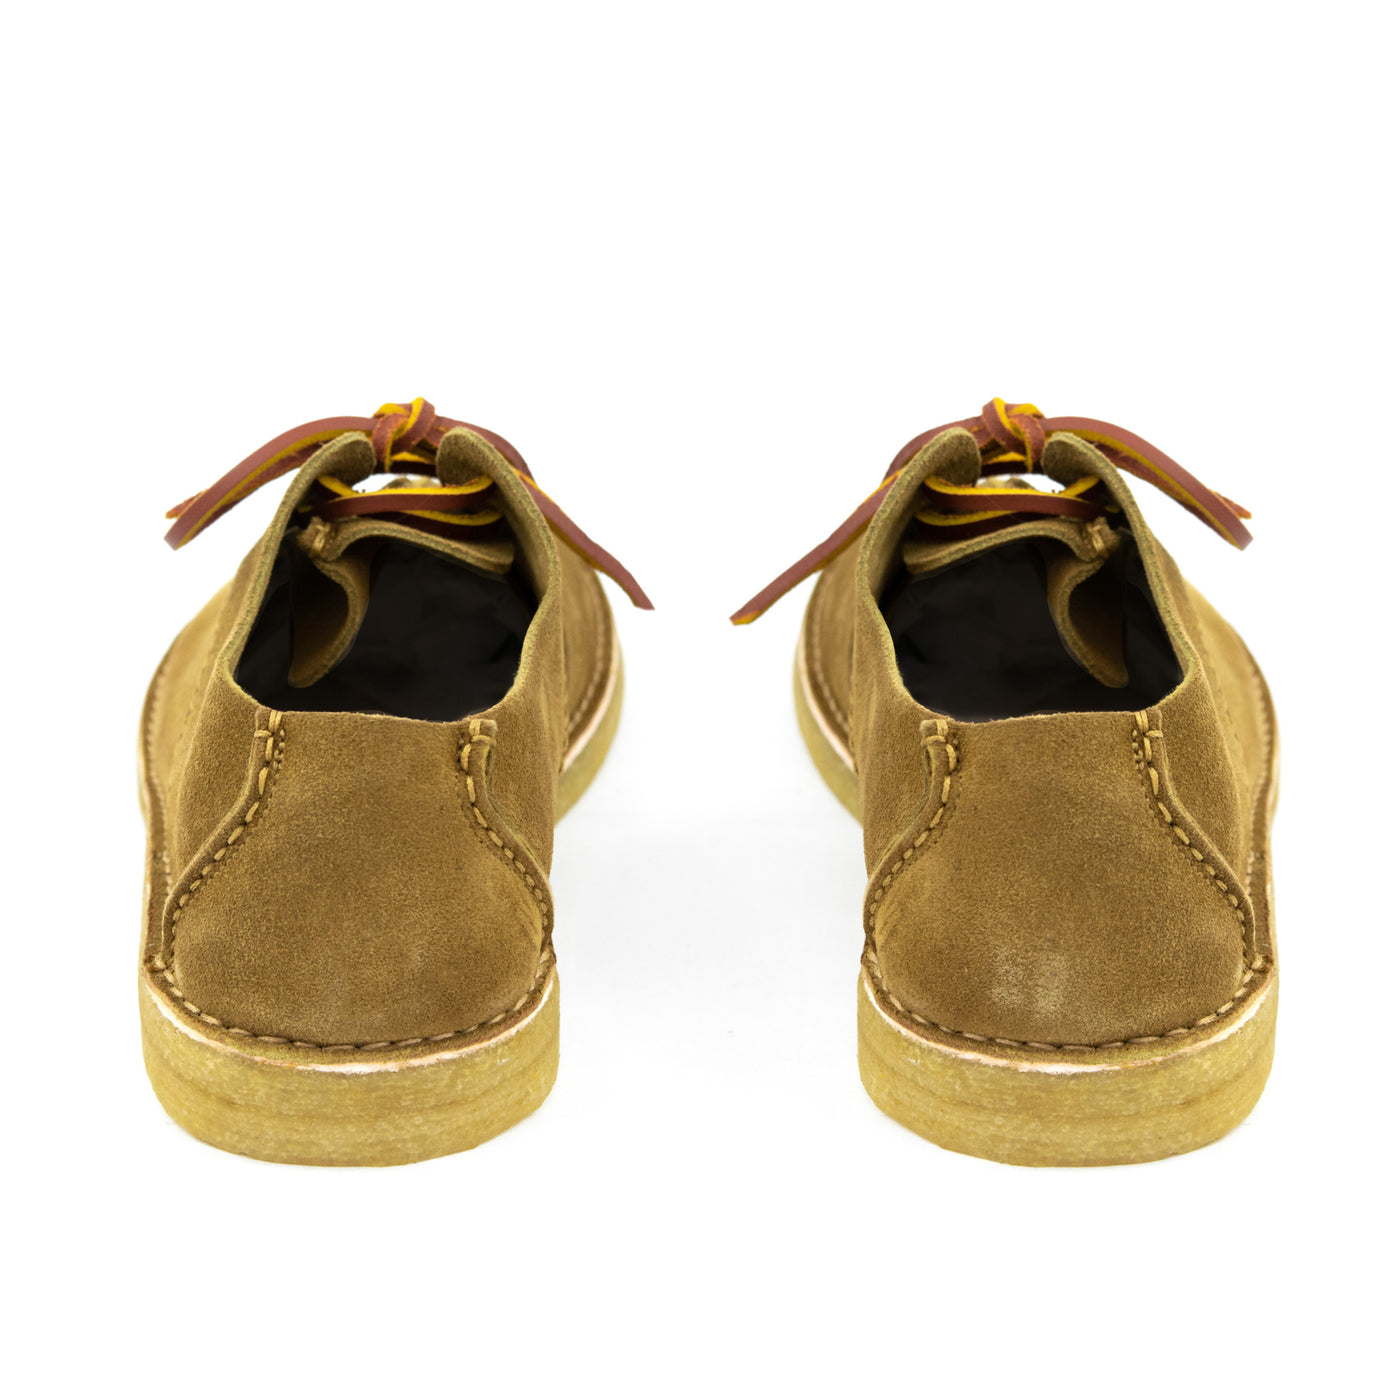 Yogi Caden Centre Seam Suede Lace Up Shoe Moss Green Heel